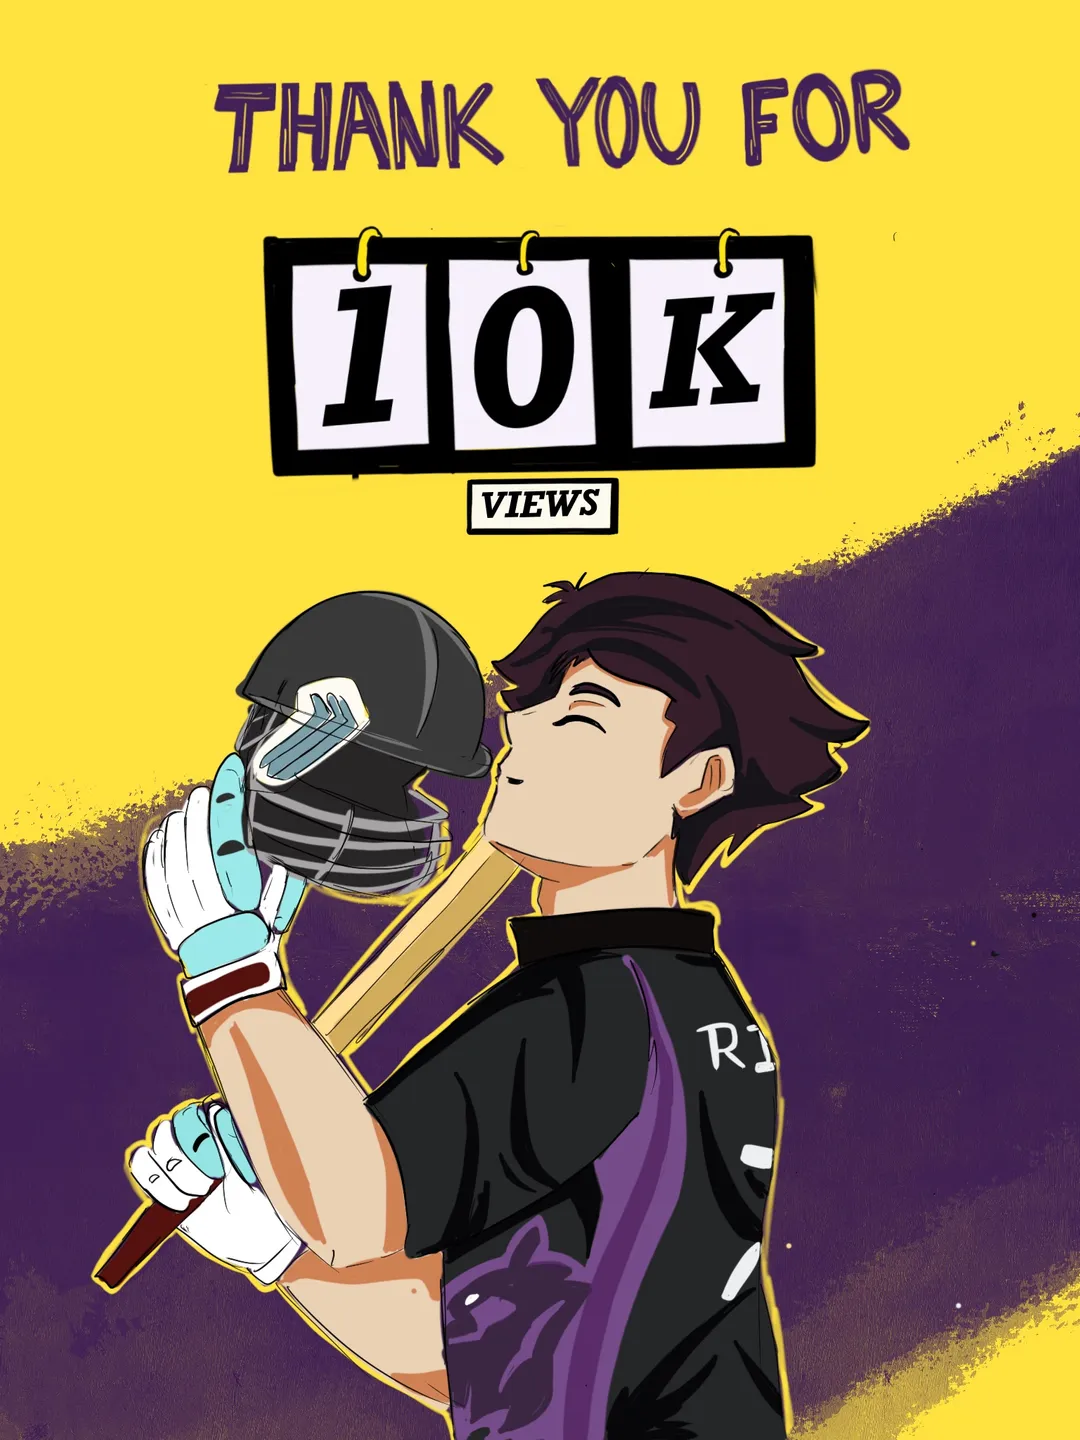 We reached 10k viewers on Webtoon